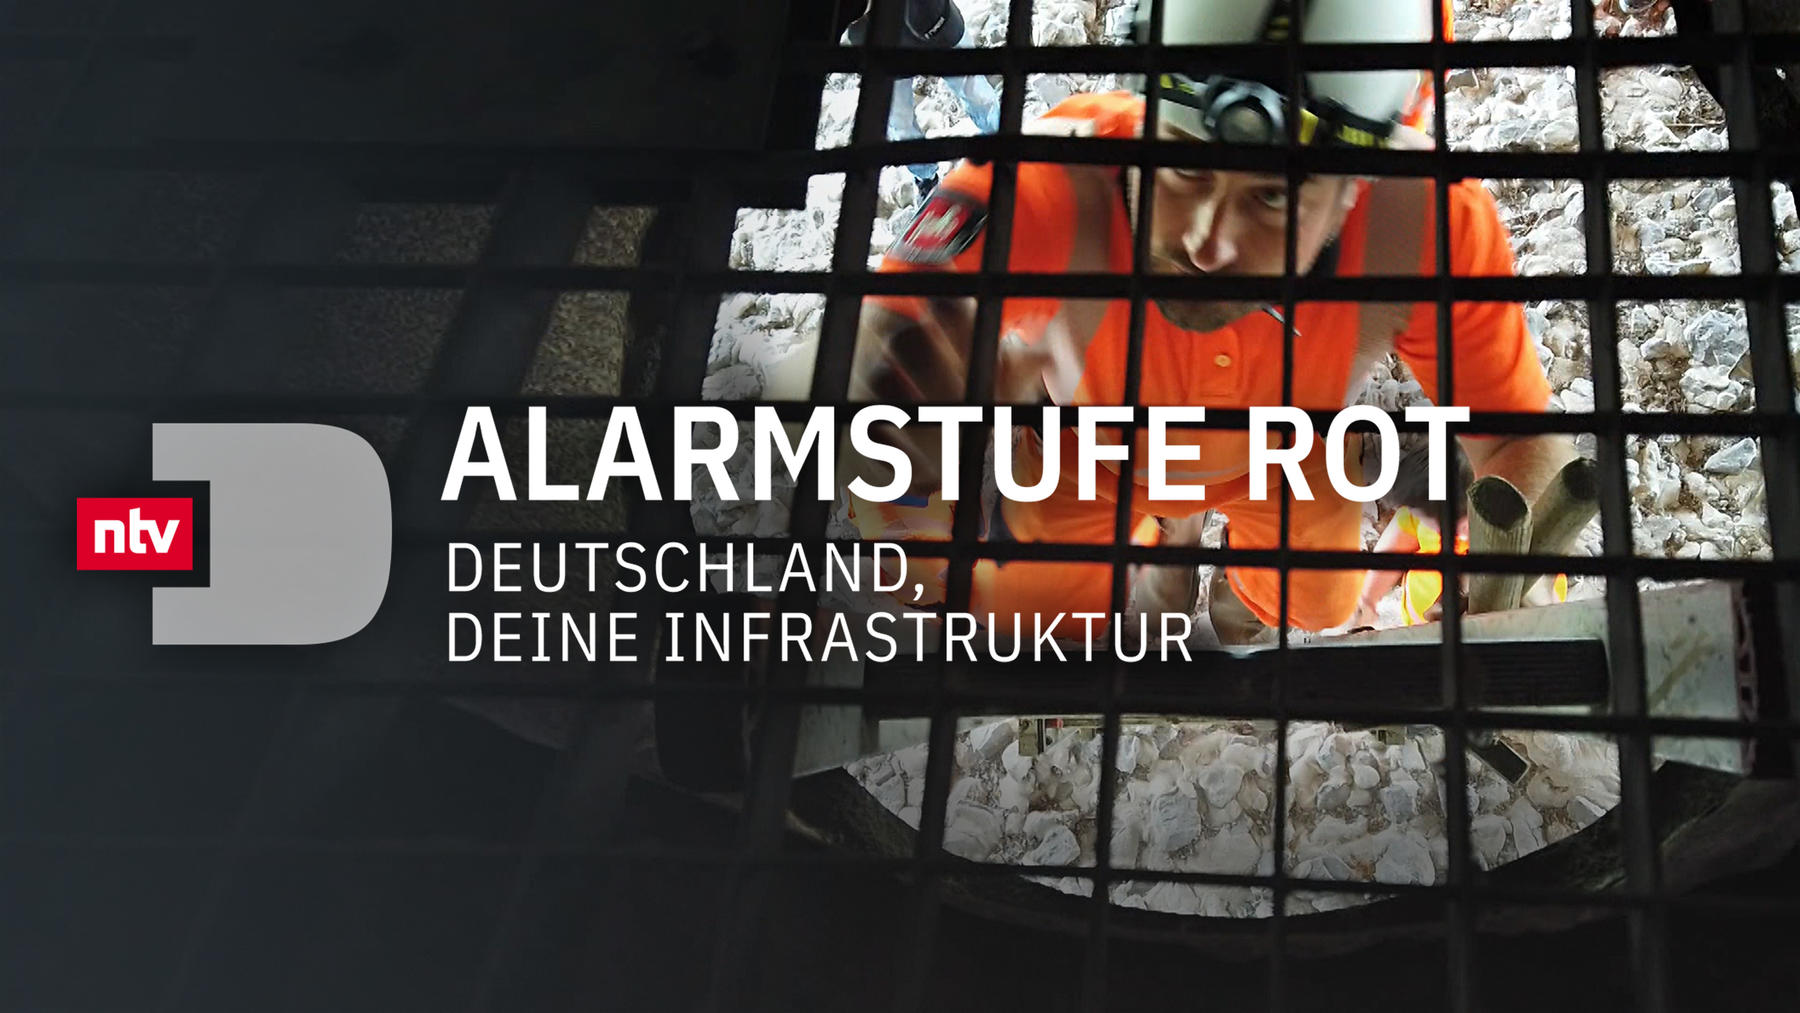 Alarmstufe Rot - Deutschland, deine Infrastruktur